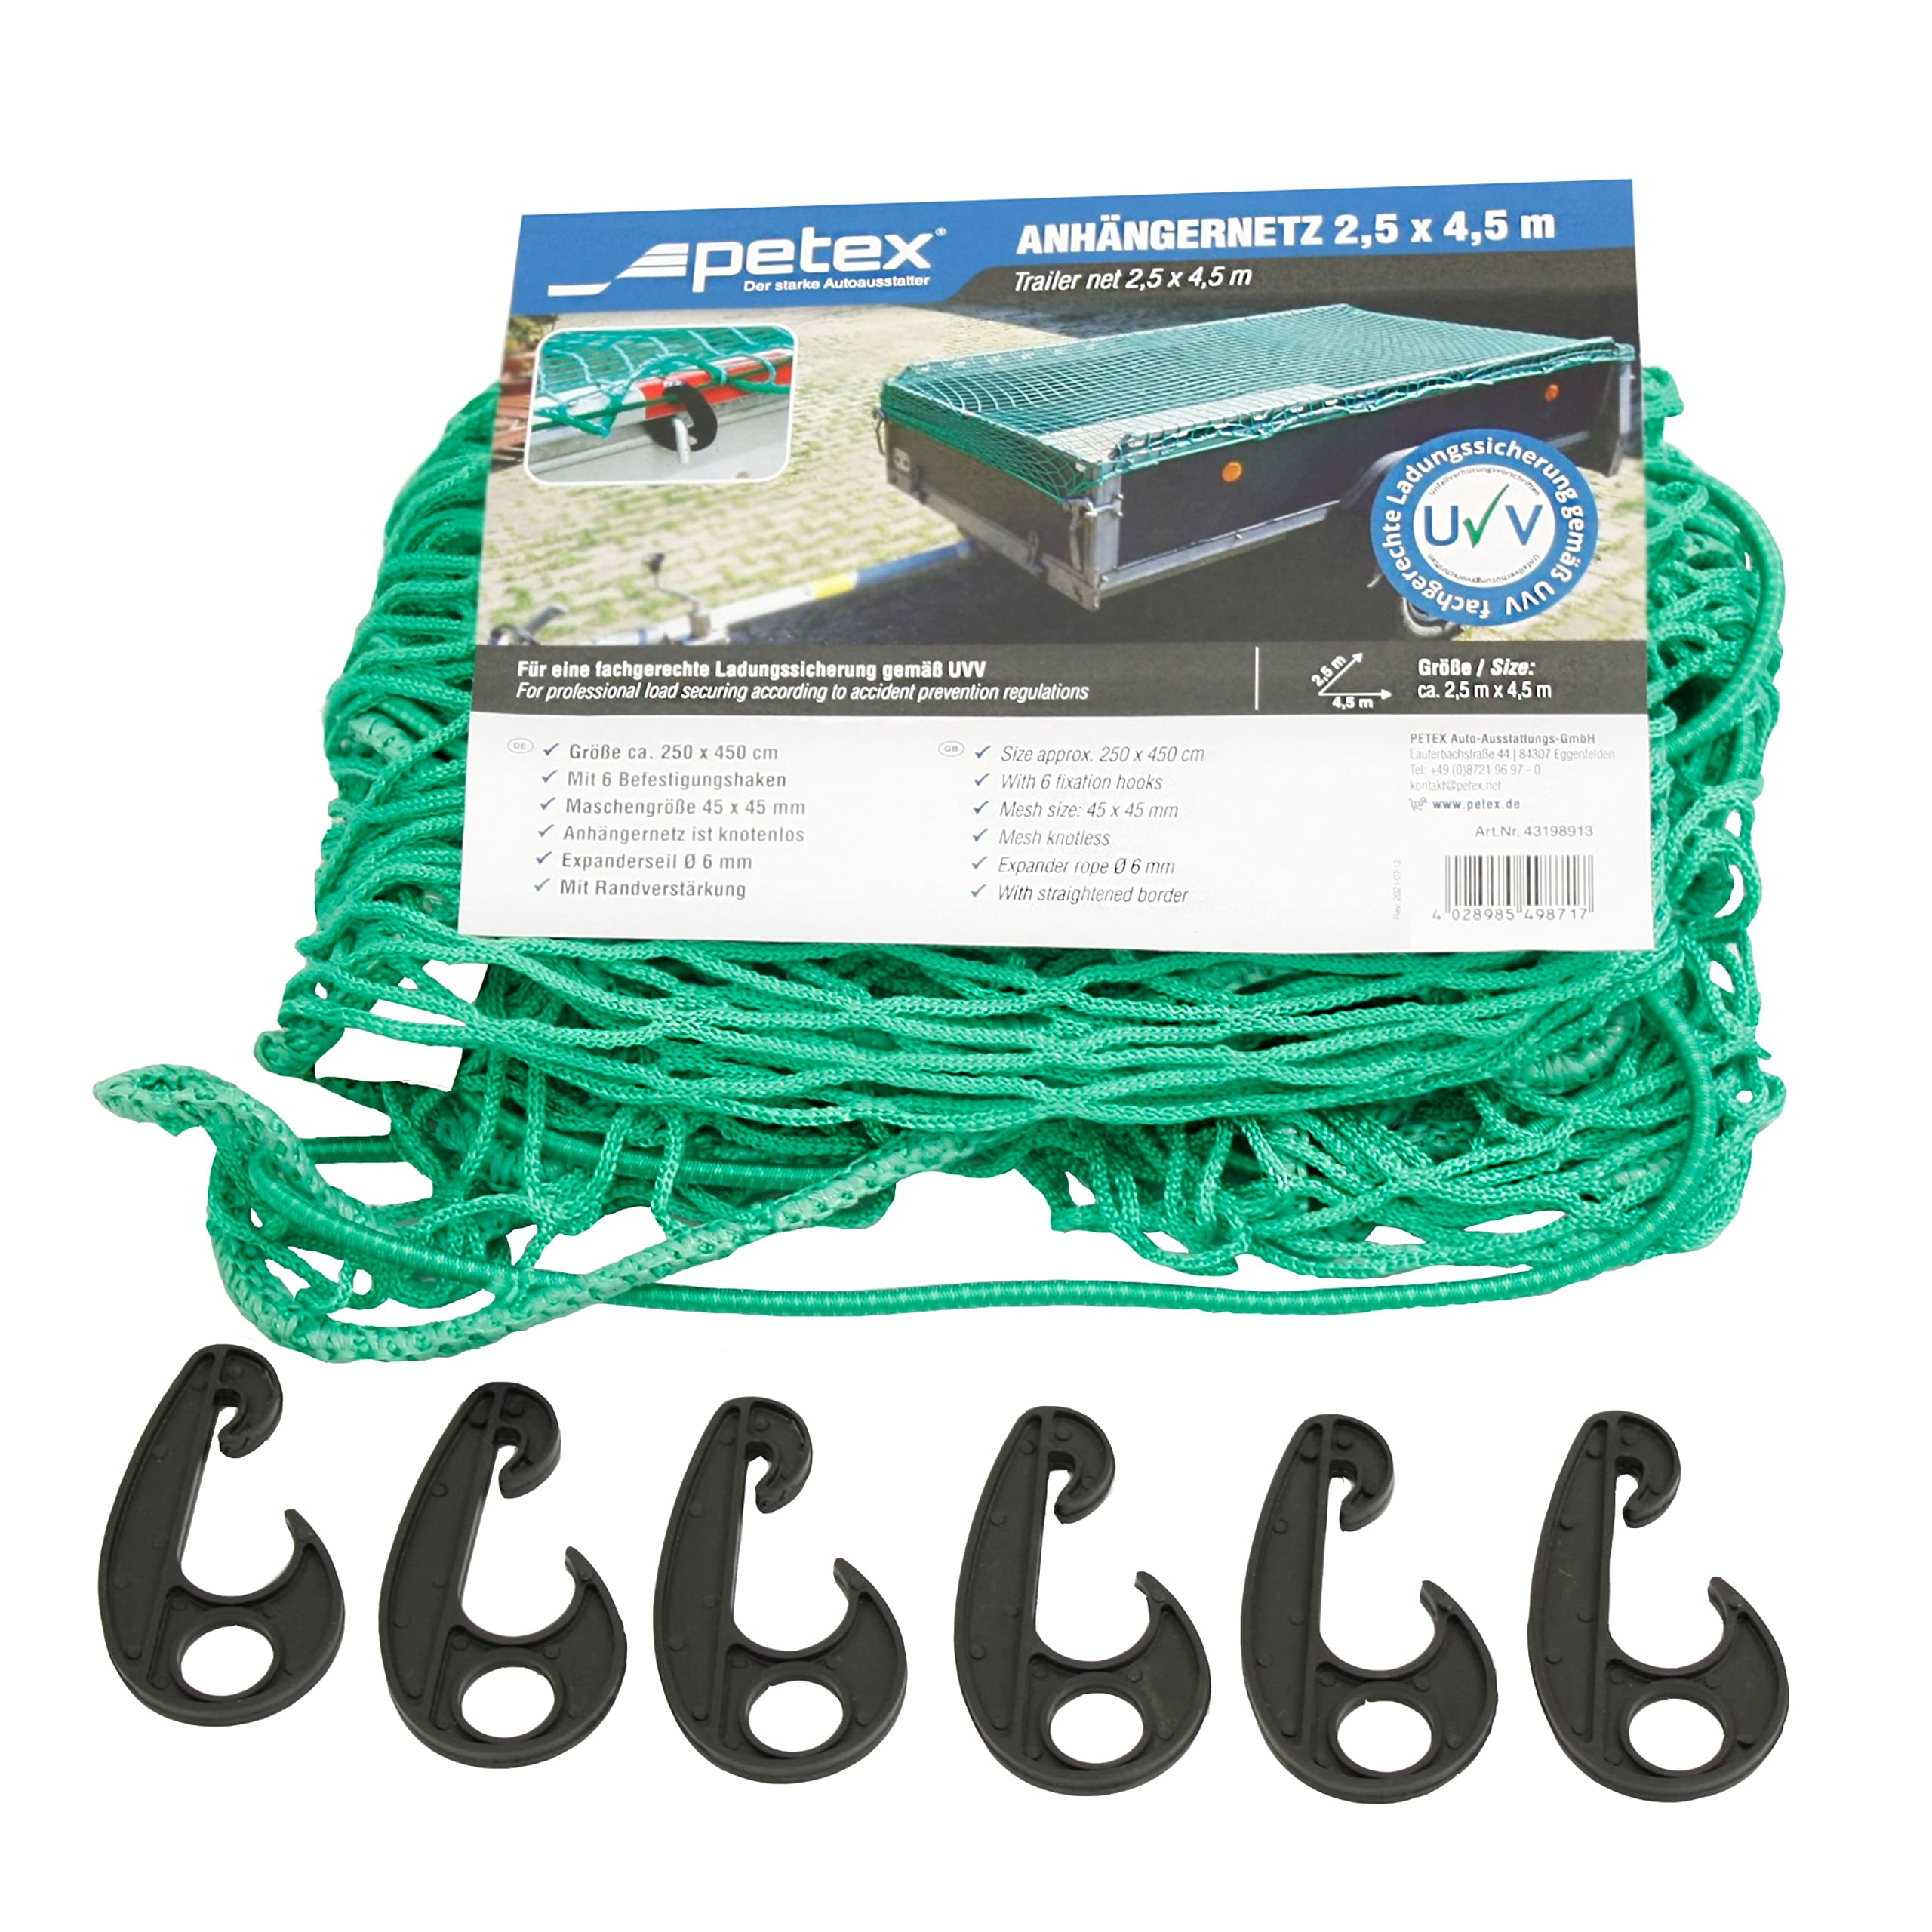 PETEX 43198913 Anhängernetz, 2,5 x 4,5 m, grün